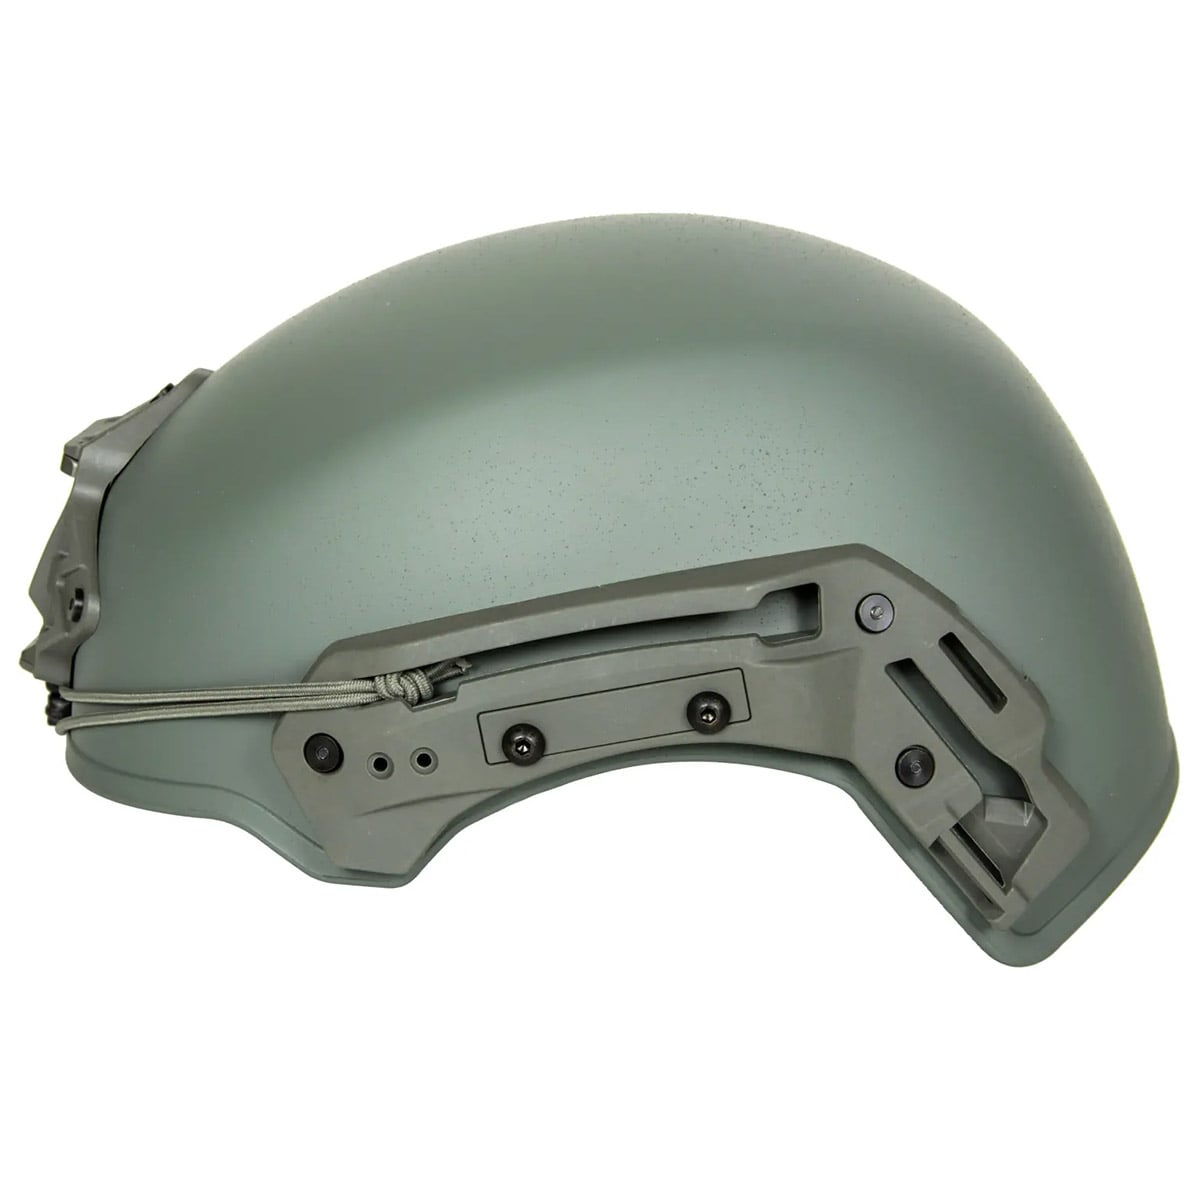 Hełm ASG FMA EX Helmet L/XL - Foliage green 